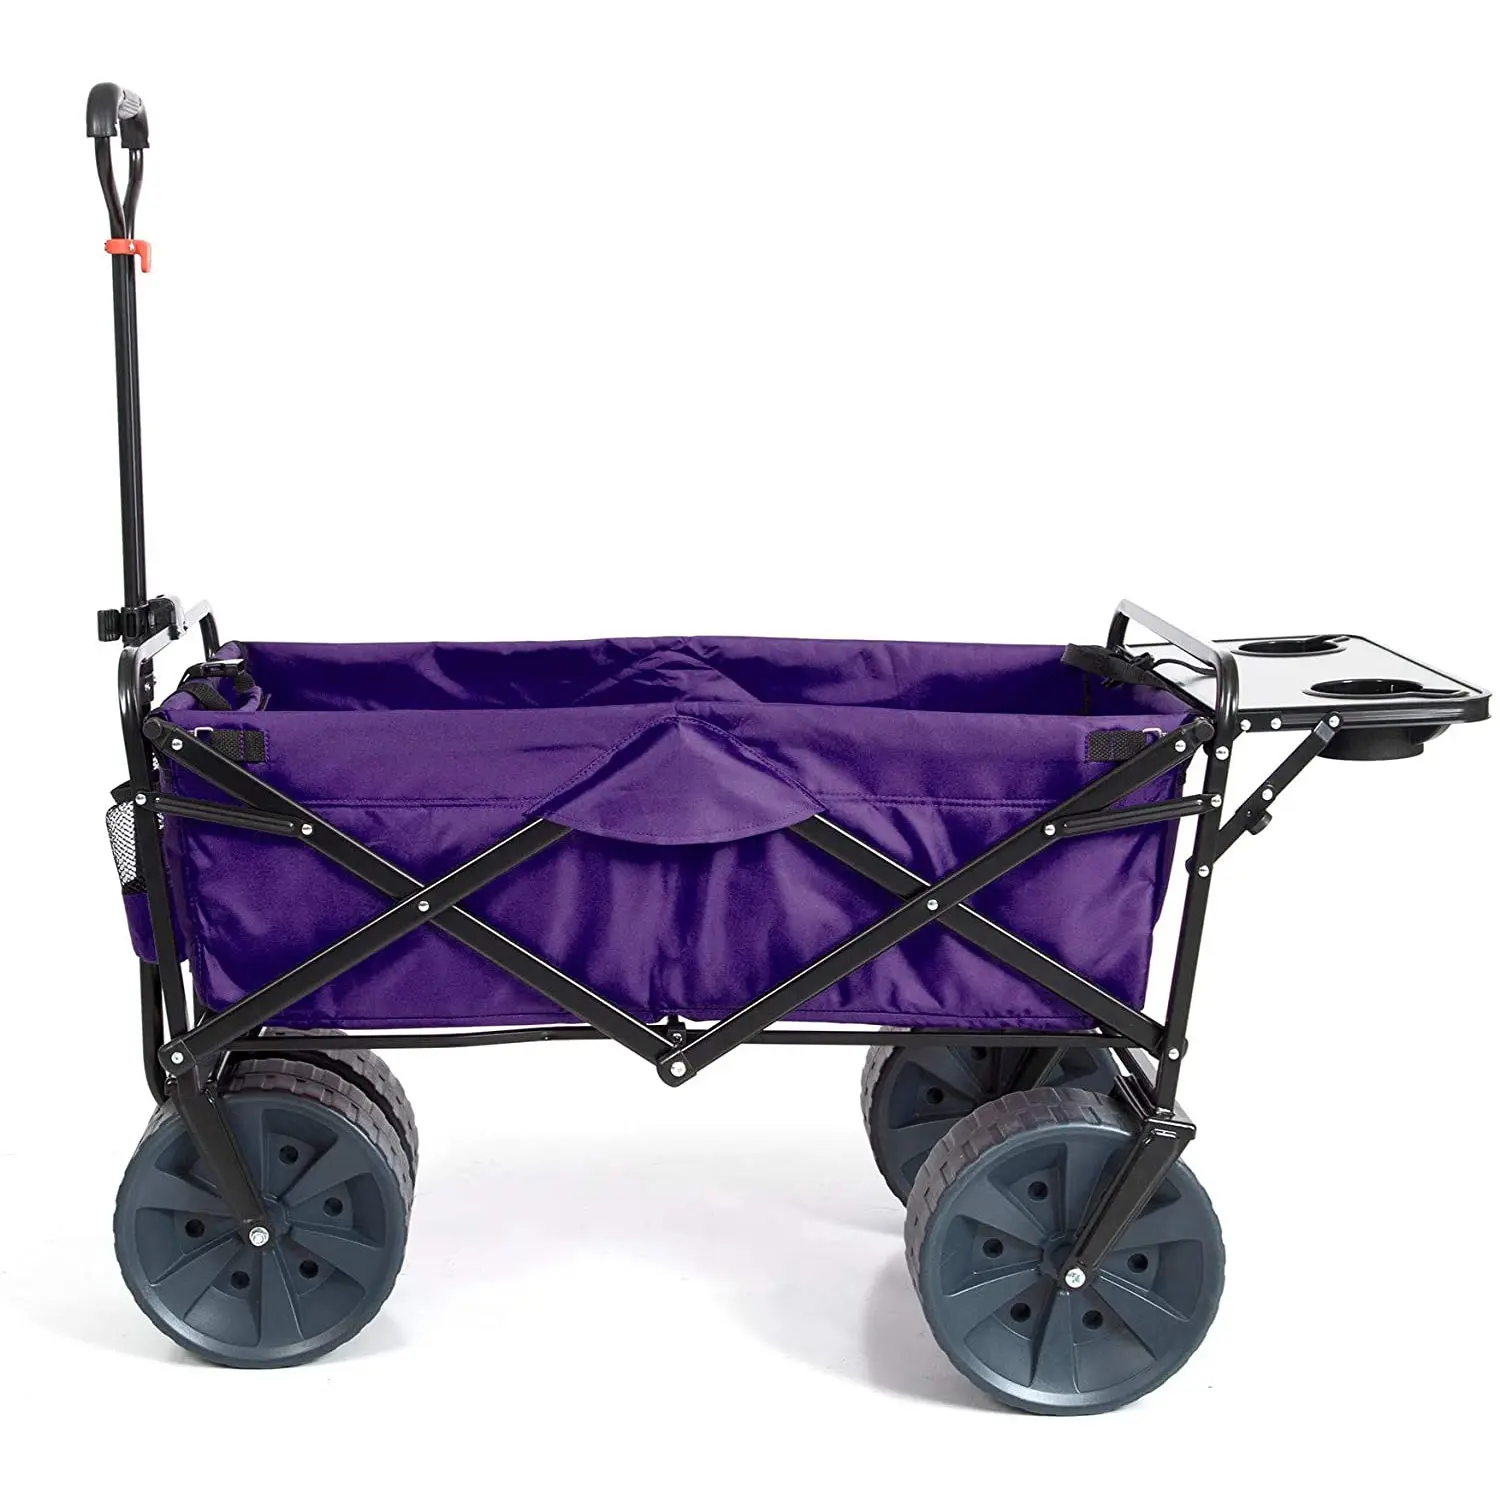 Carrito utilitario de Metal plegable portátil de cuatro ruedas, vagón plegable para compras, playa, jardín, carrito de tracción, uso al aire libre